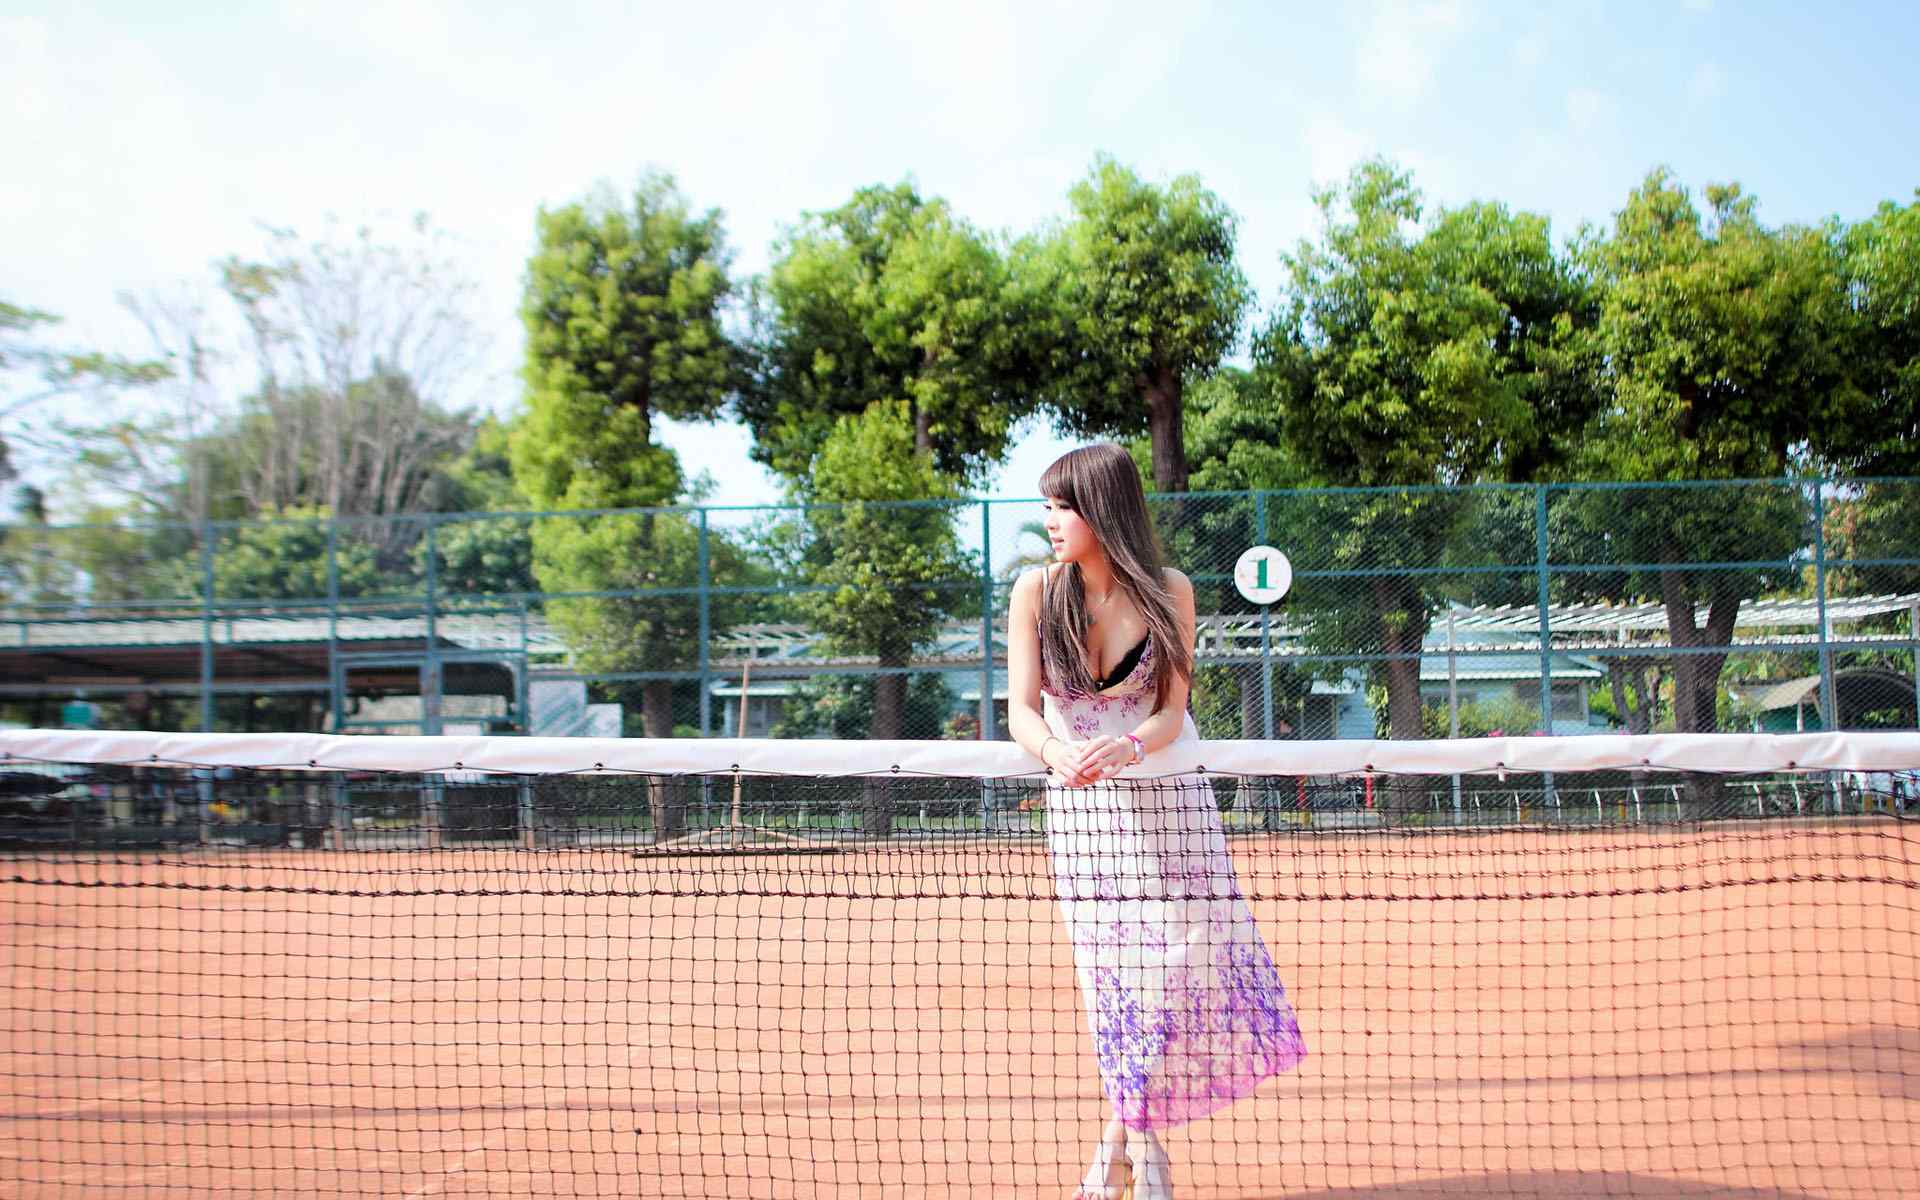 网球场上的长发妙曼女子写真壁纸